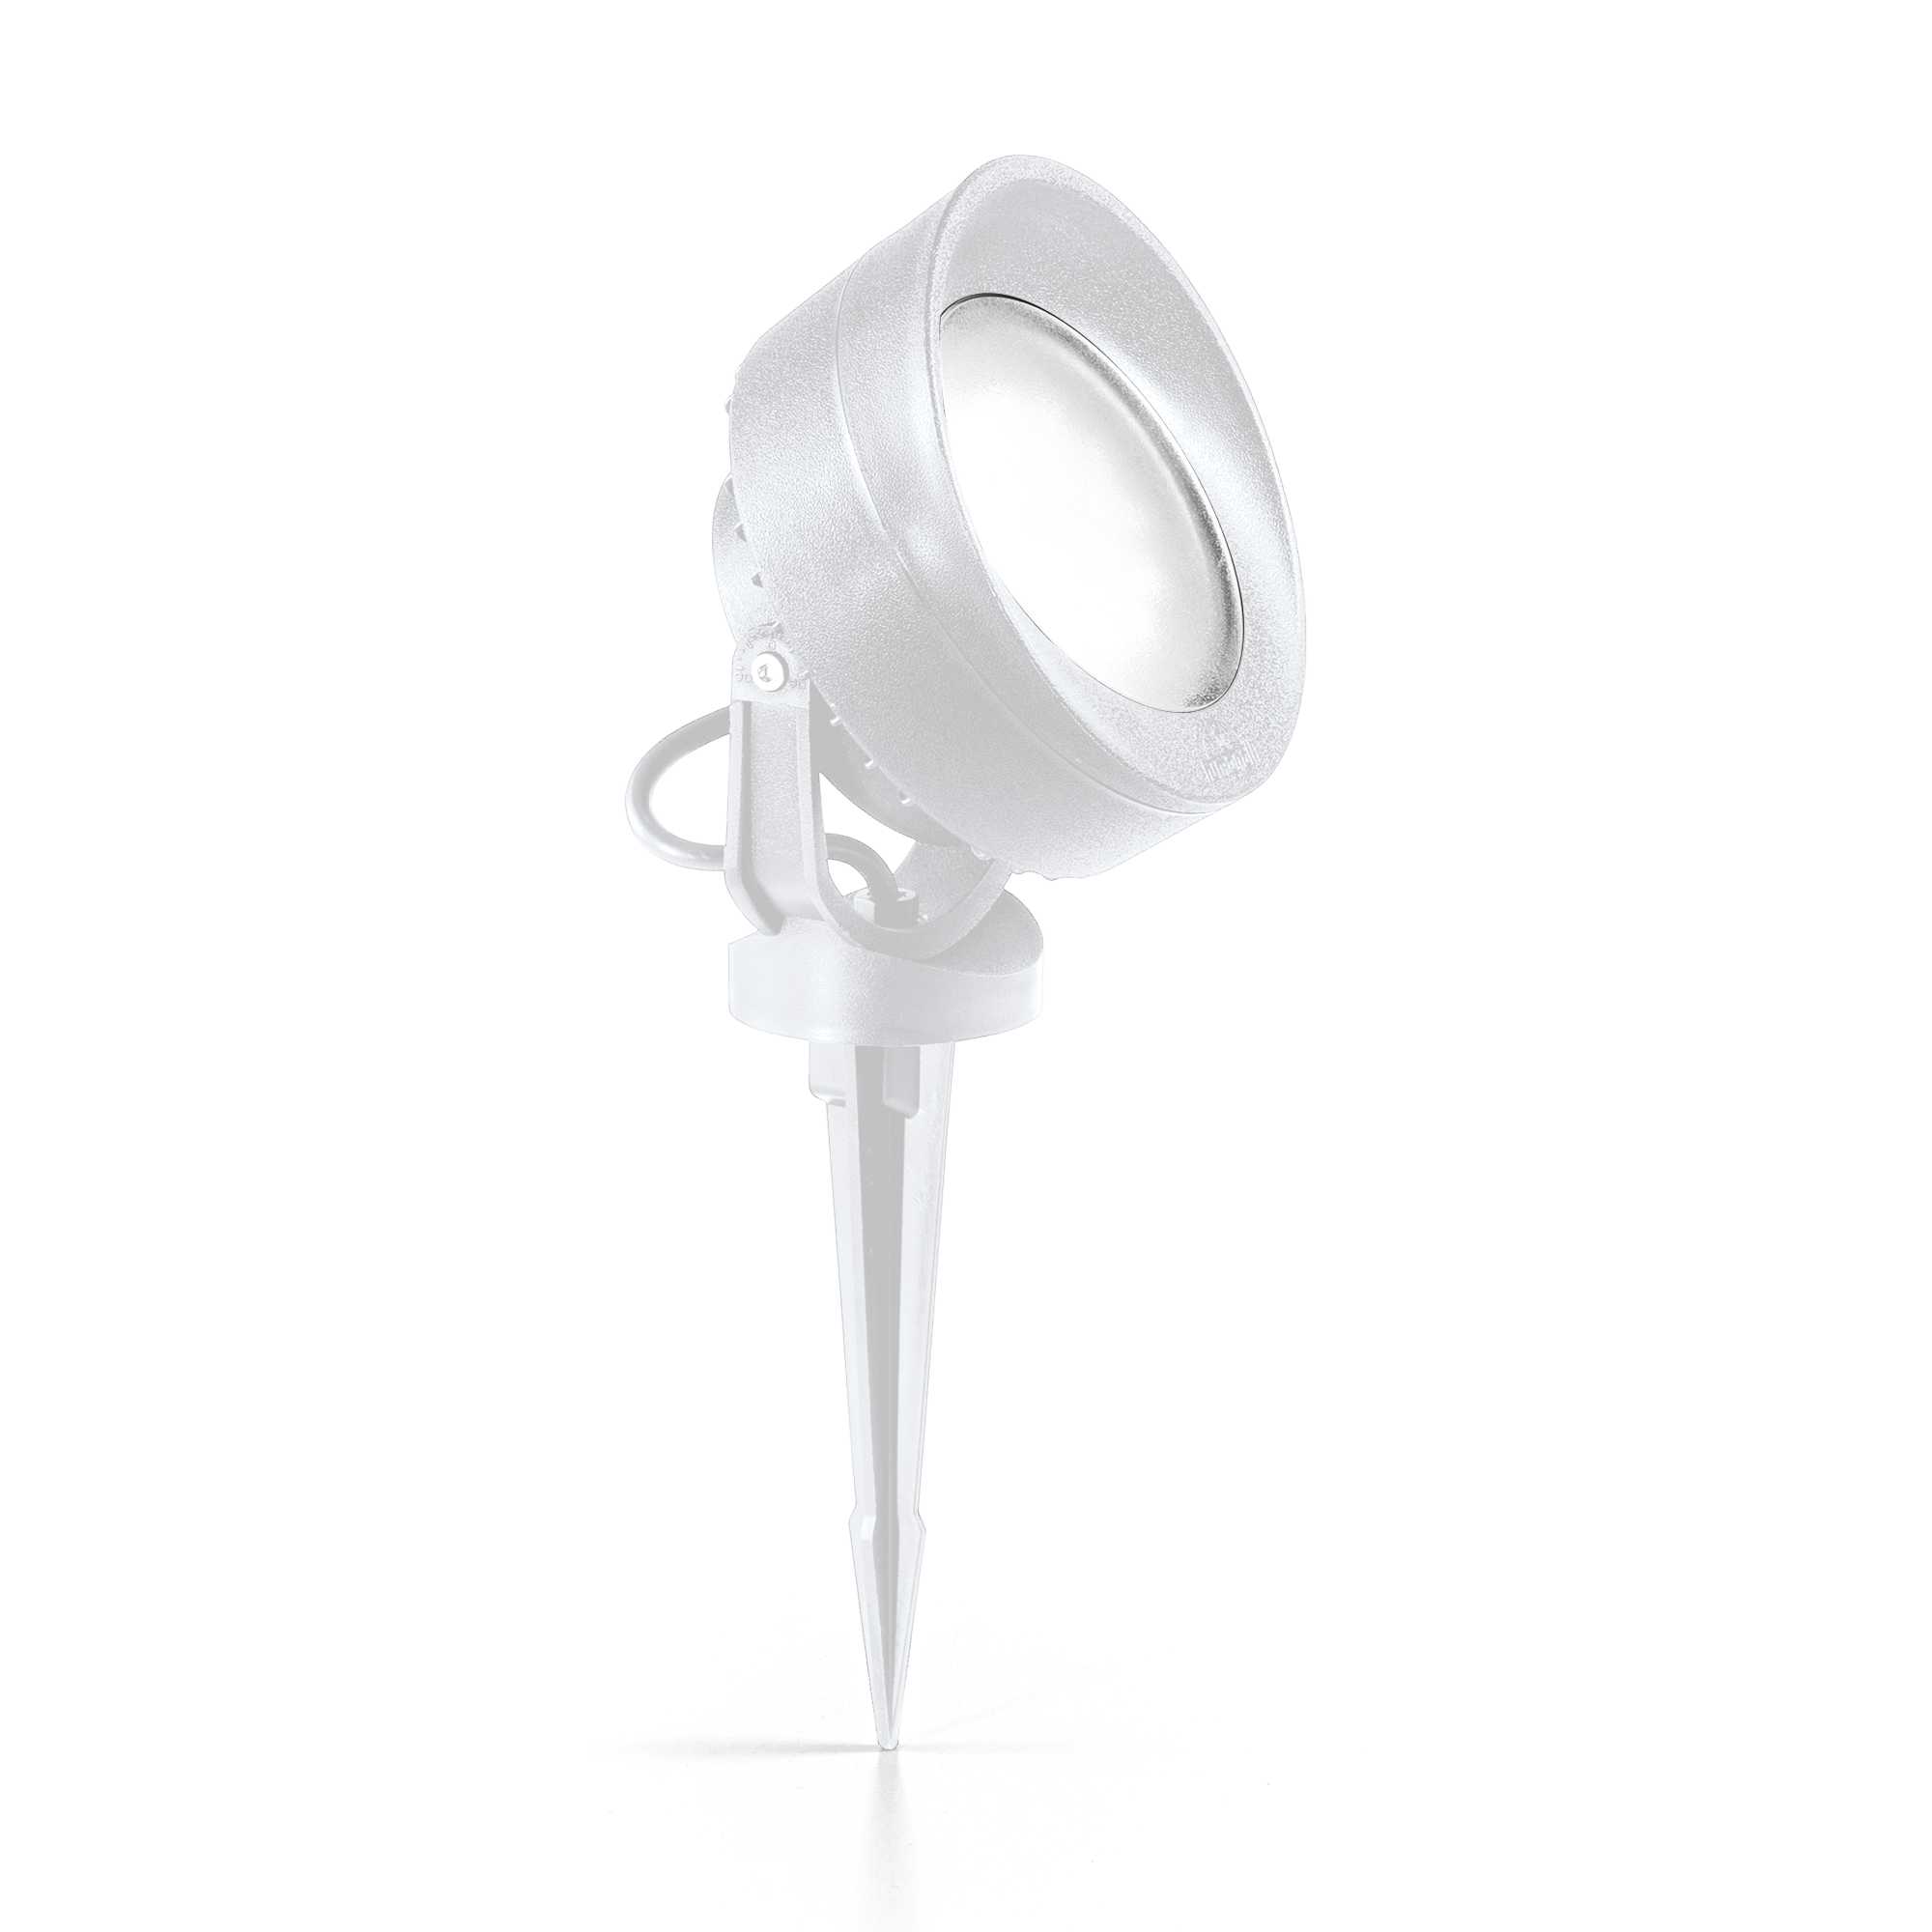 AD hotelska oprema Reflektori vanjski Litio pr1- Bijele boje slika proizvoda